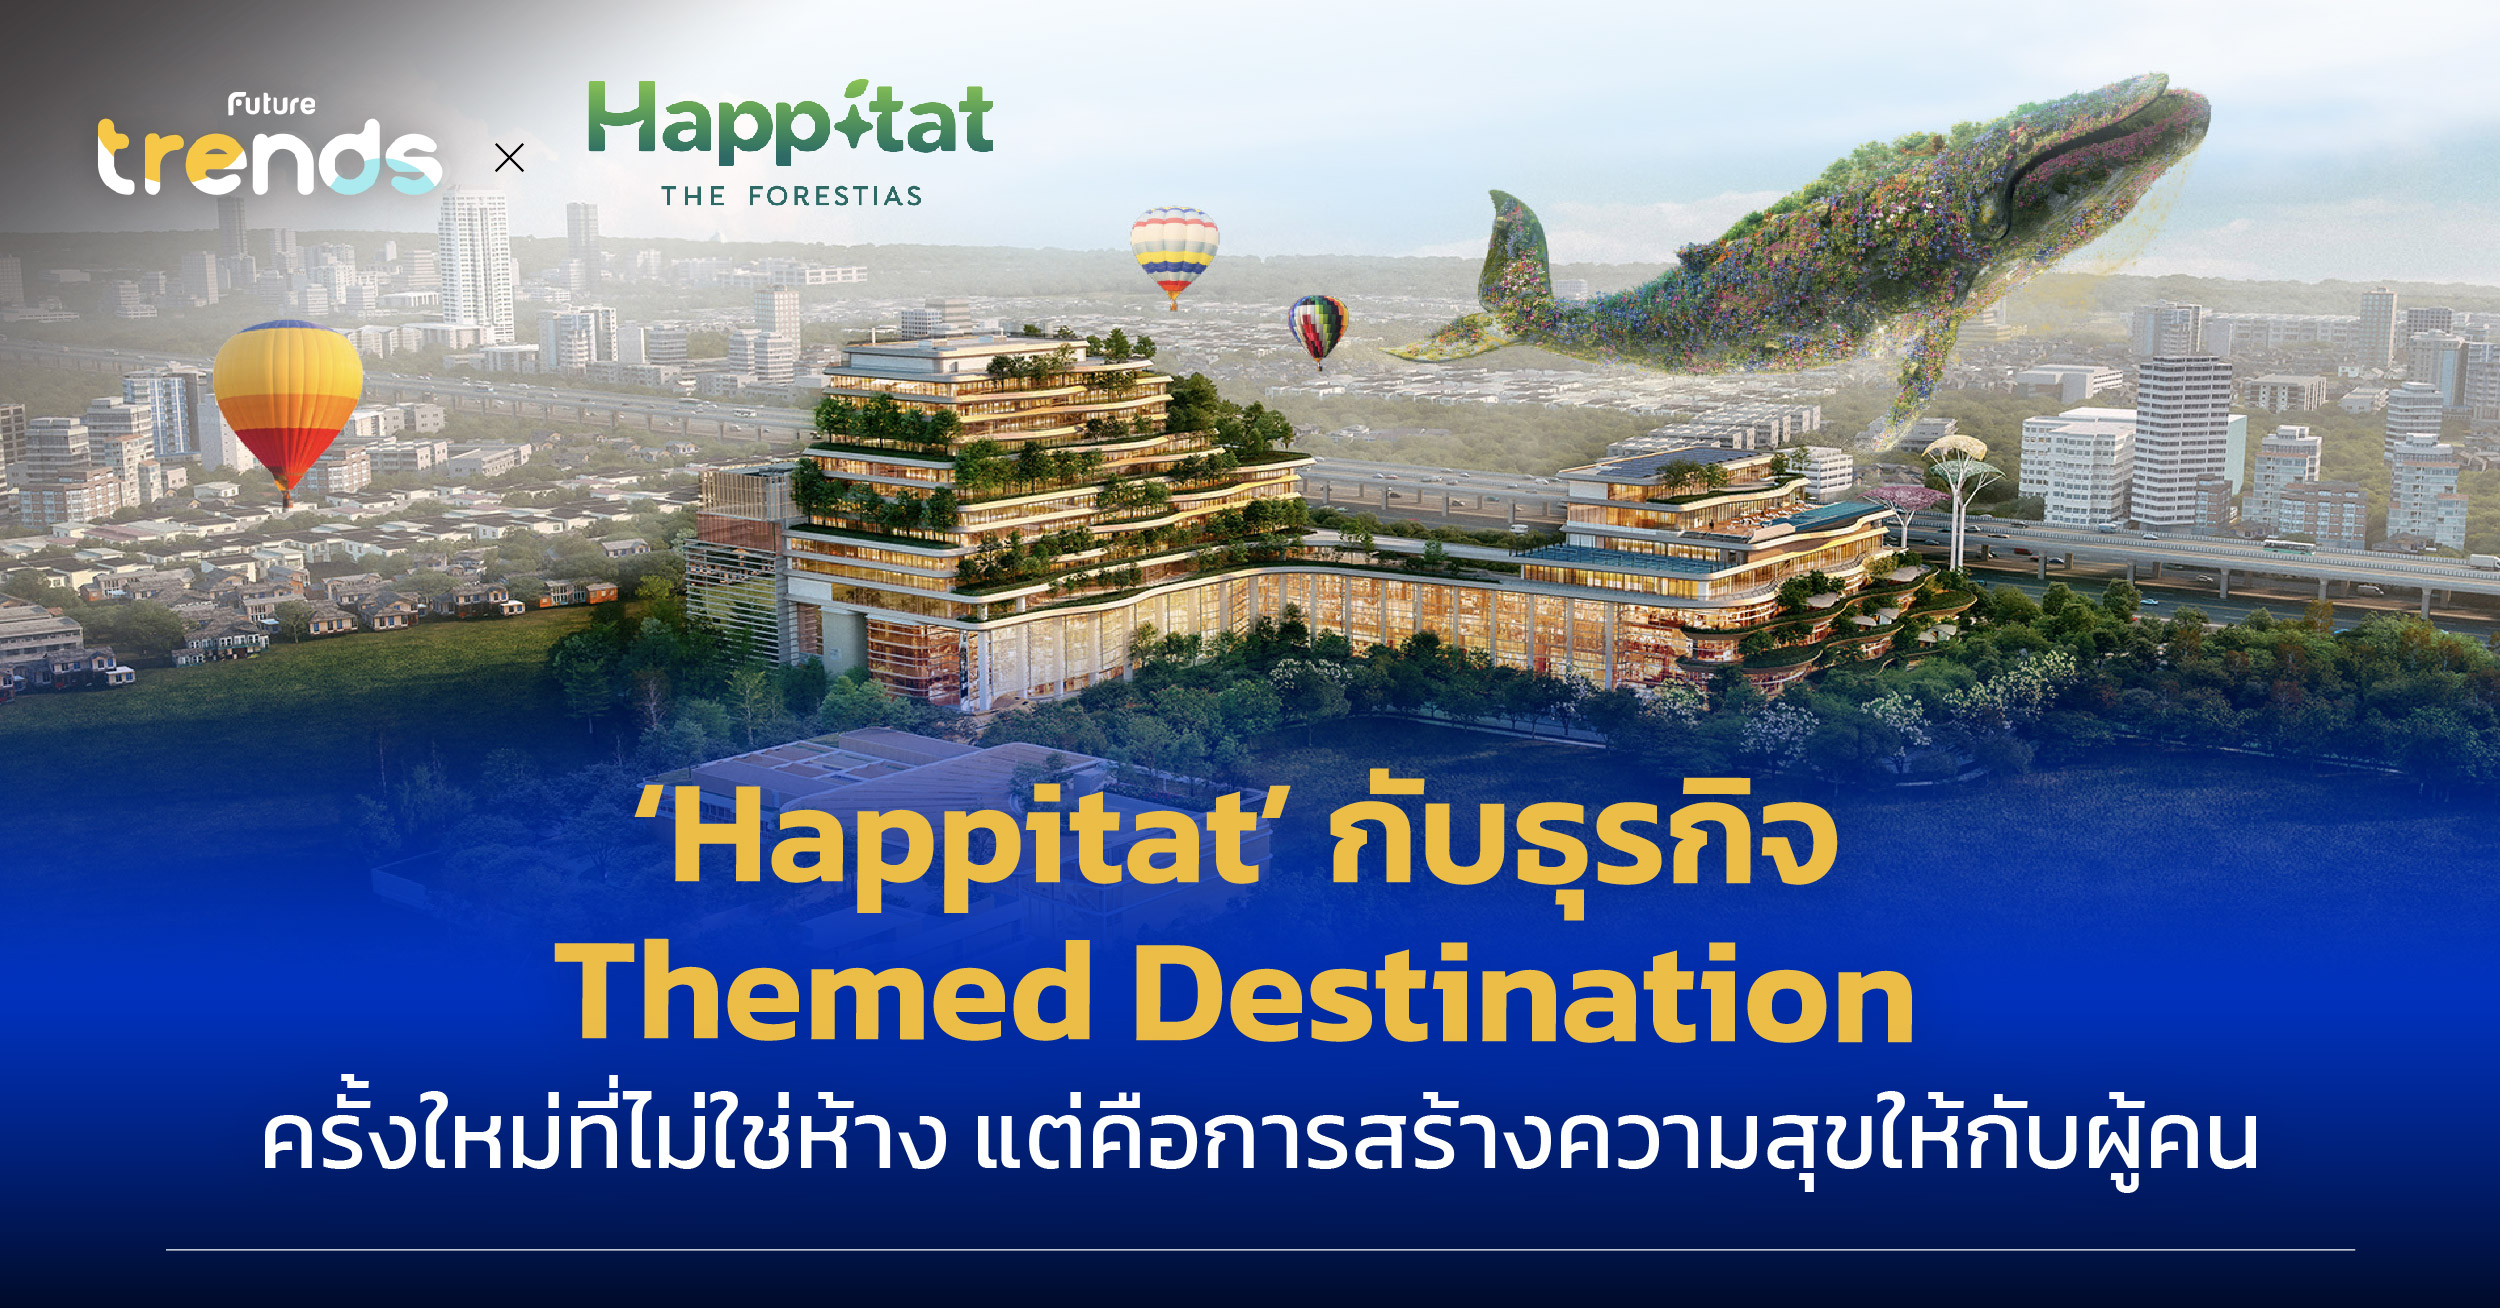 Happitat กับธุรกิจ Themed Destination ครั้งใหม่ที่ไม่ใช่ห้าง แต่คือการสร้างความสุขให้กับผู้คน